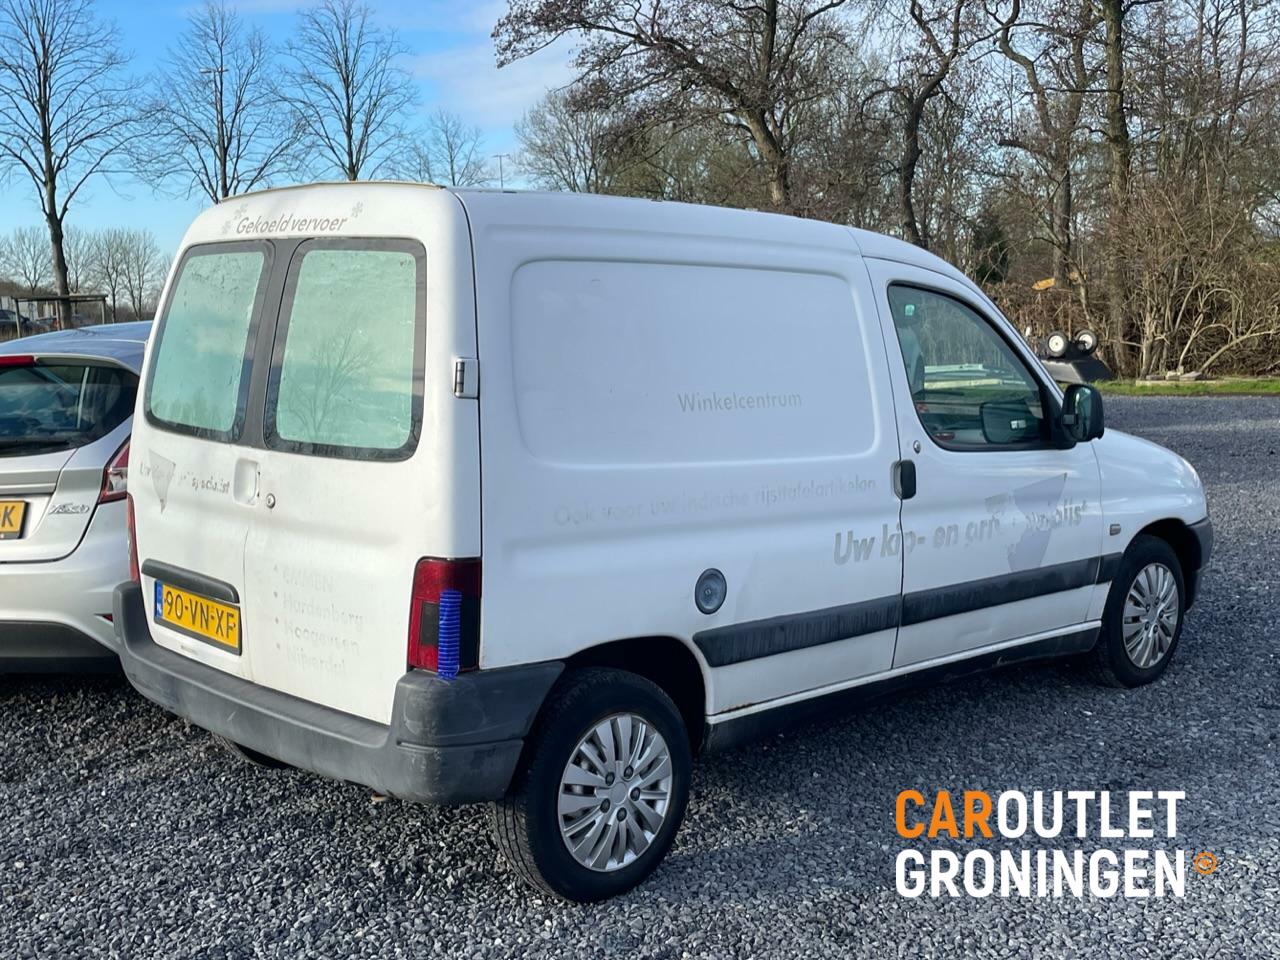 Caroutlet Groningen - Peugeot Partner bestel 170C 1.9D | KOELWAGEN |